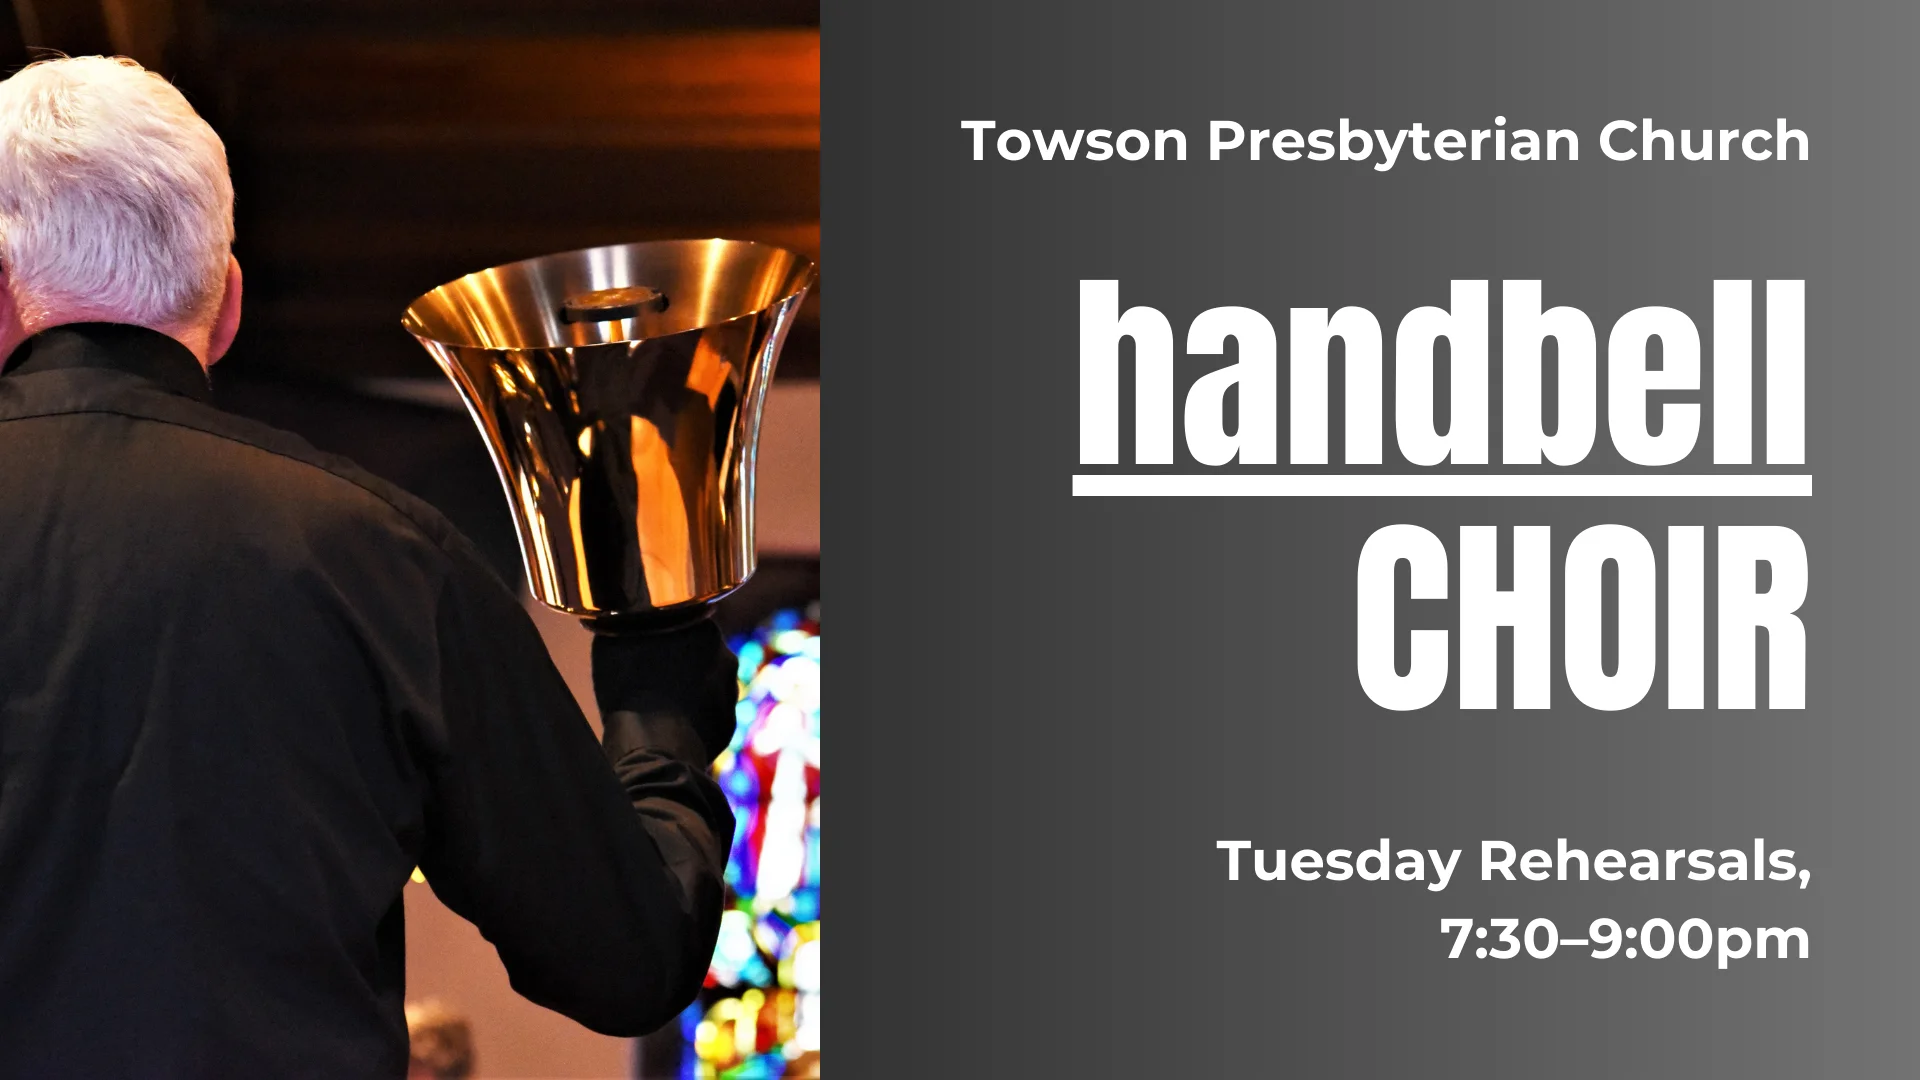 Graphic that says: "Towson Presbyterian Church. handbell Choir. Tuesday Rehearsals, 7:30-9:00pm."